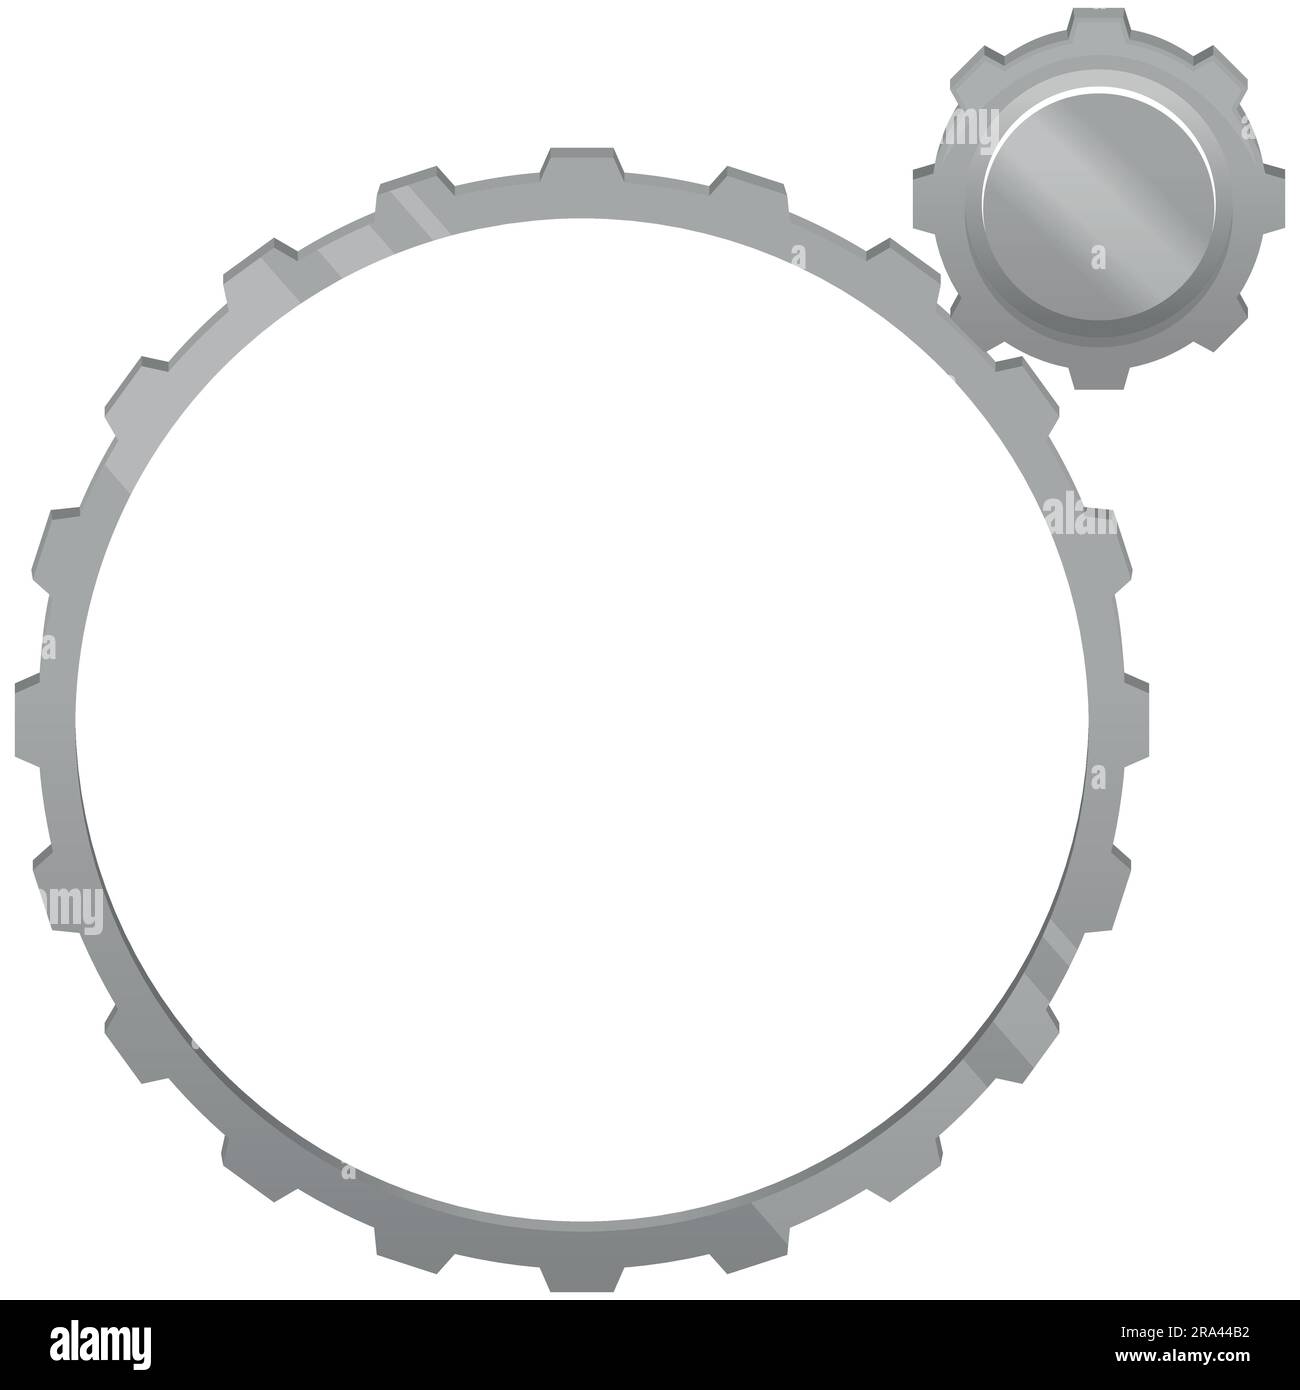 Cogwheel mechanism vector design, gear part of a technological mechanism Stock Vector